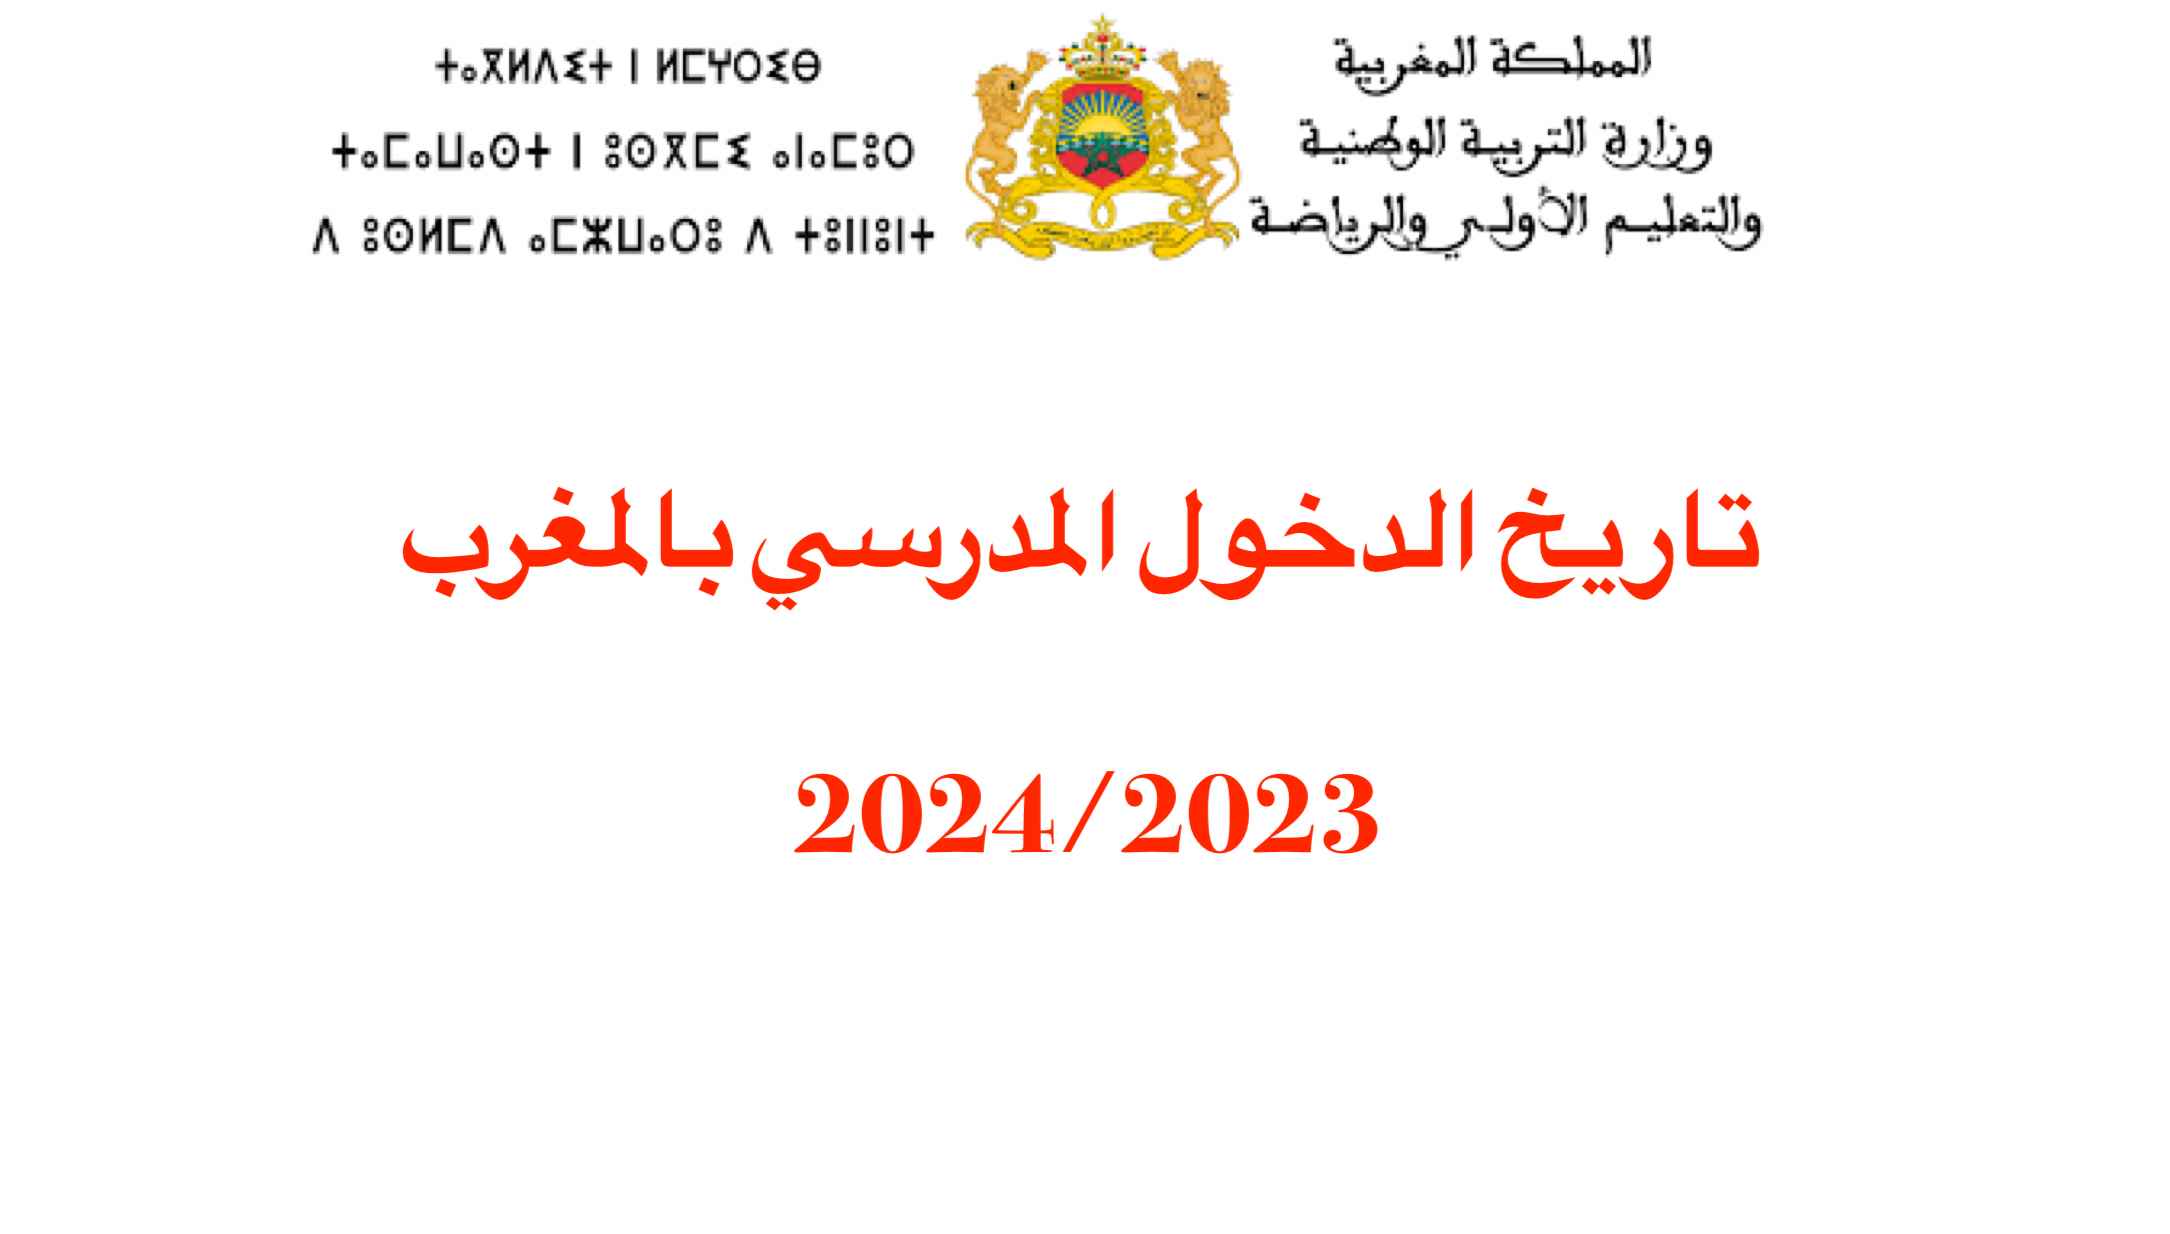 تاريخ الدخول المدرسي بالمغرب 2024/2023